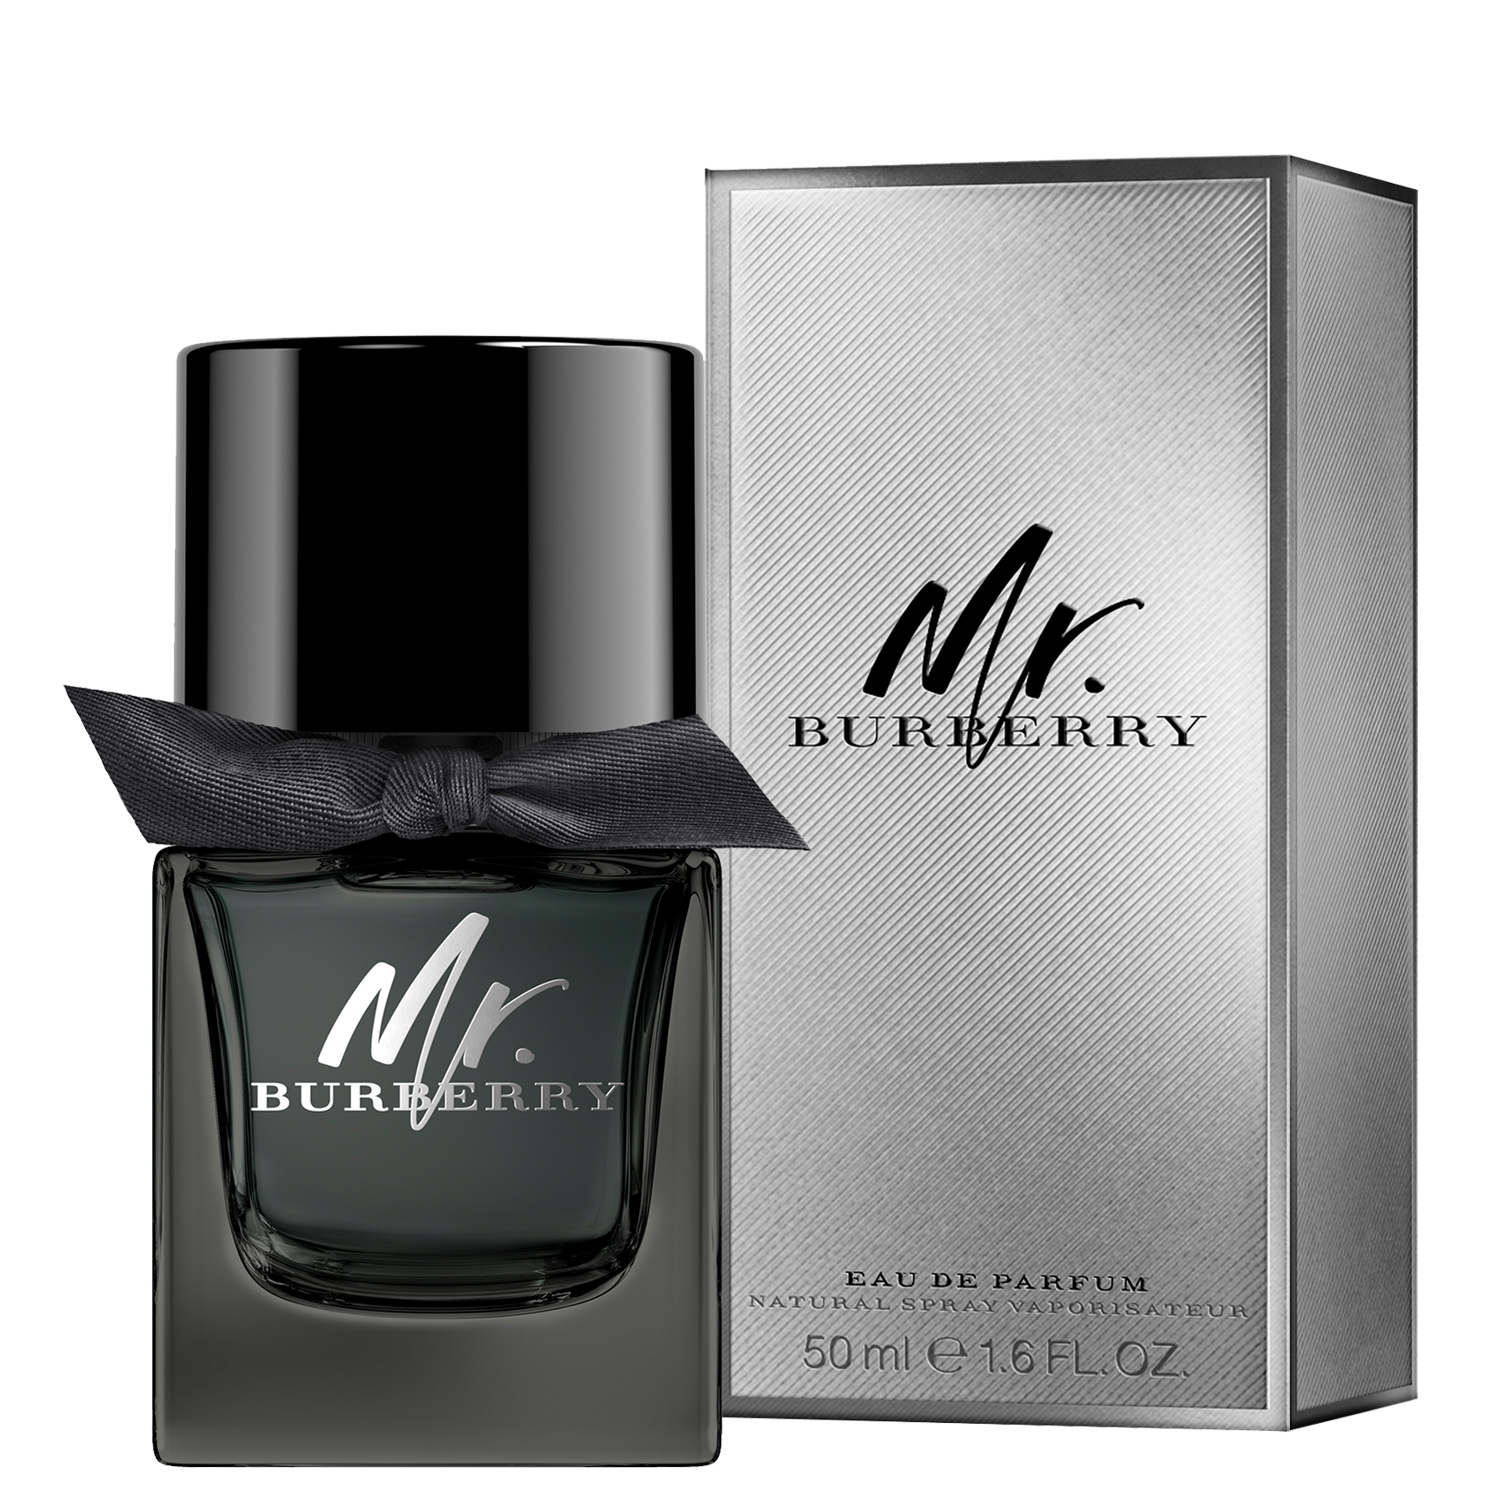 Burberry Mr. Burberry Eau de Parfum 50ml